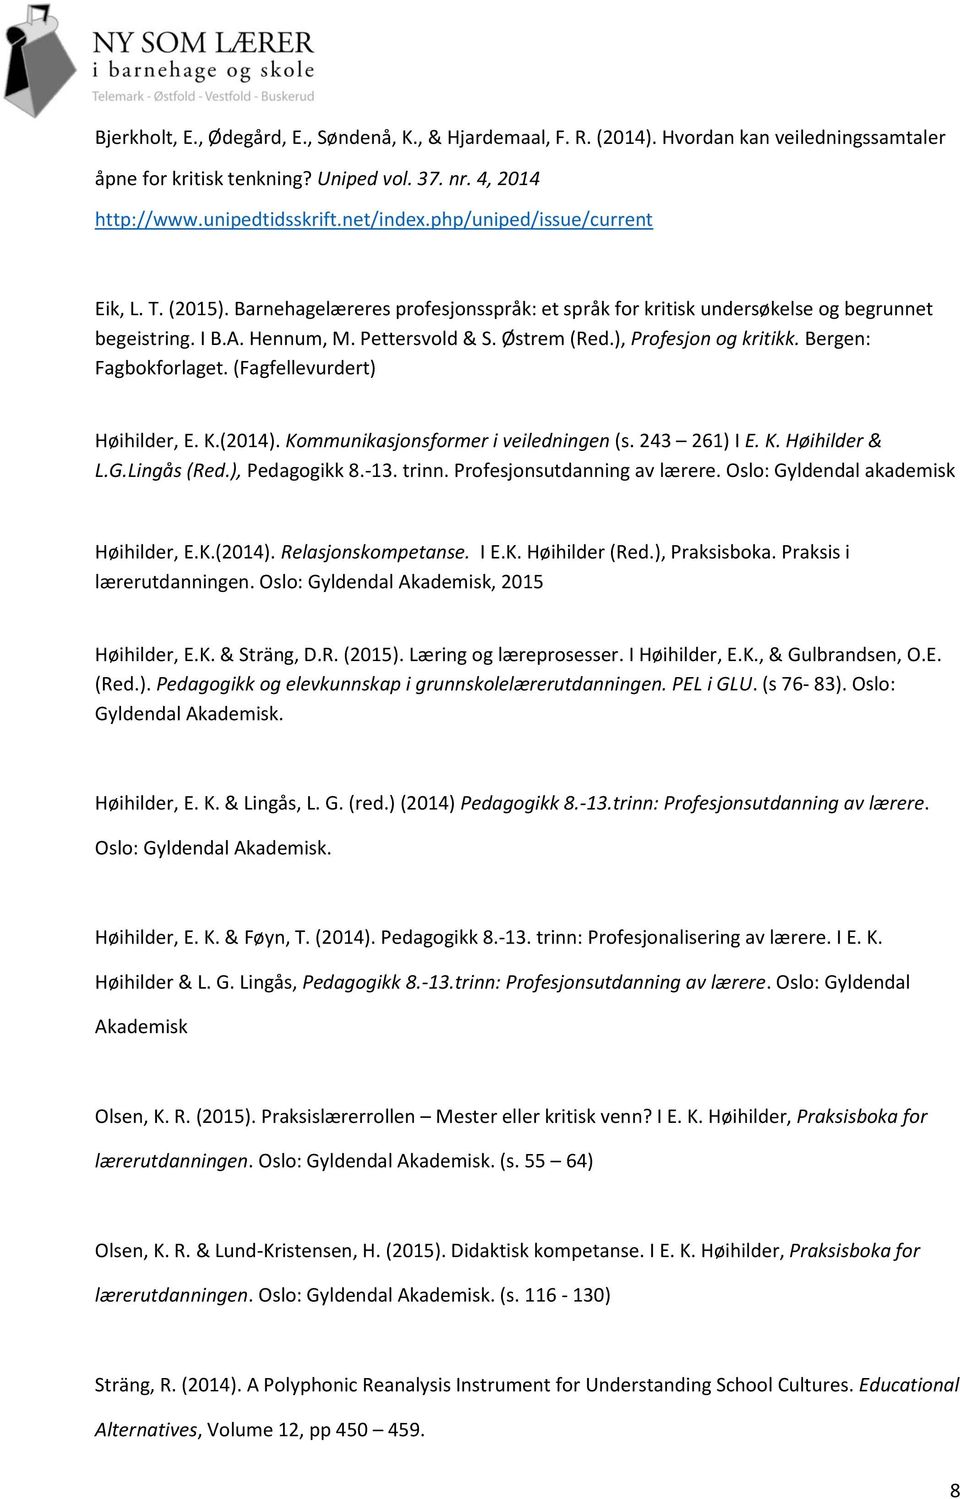 ), Profesjon og kritikk. Bergen: Fagbokforlaget. (Fagfellevurdert) Høihilder, E. K.(2014). Kommunikasjonsformer i veiledningen (s. 243 261) I E. K. Høihilder & L.G.Lingås (Red.), Pedagogikk 8.-13.